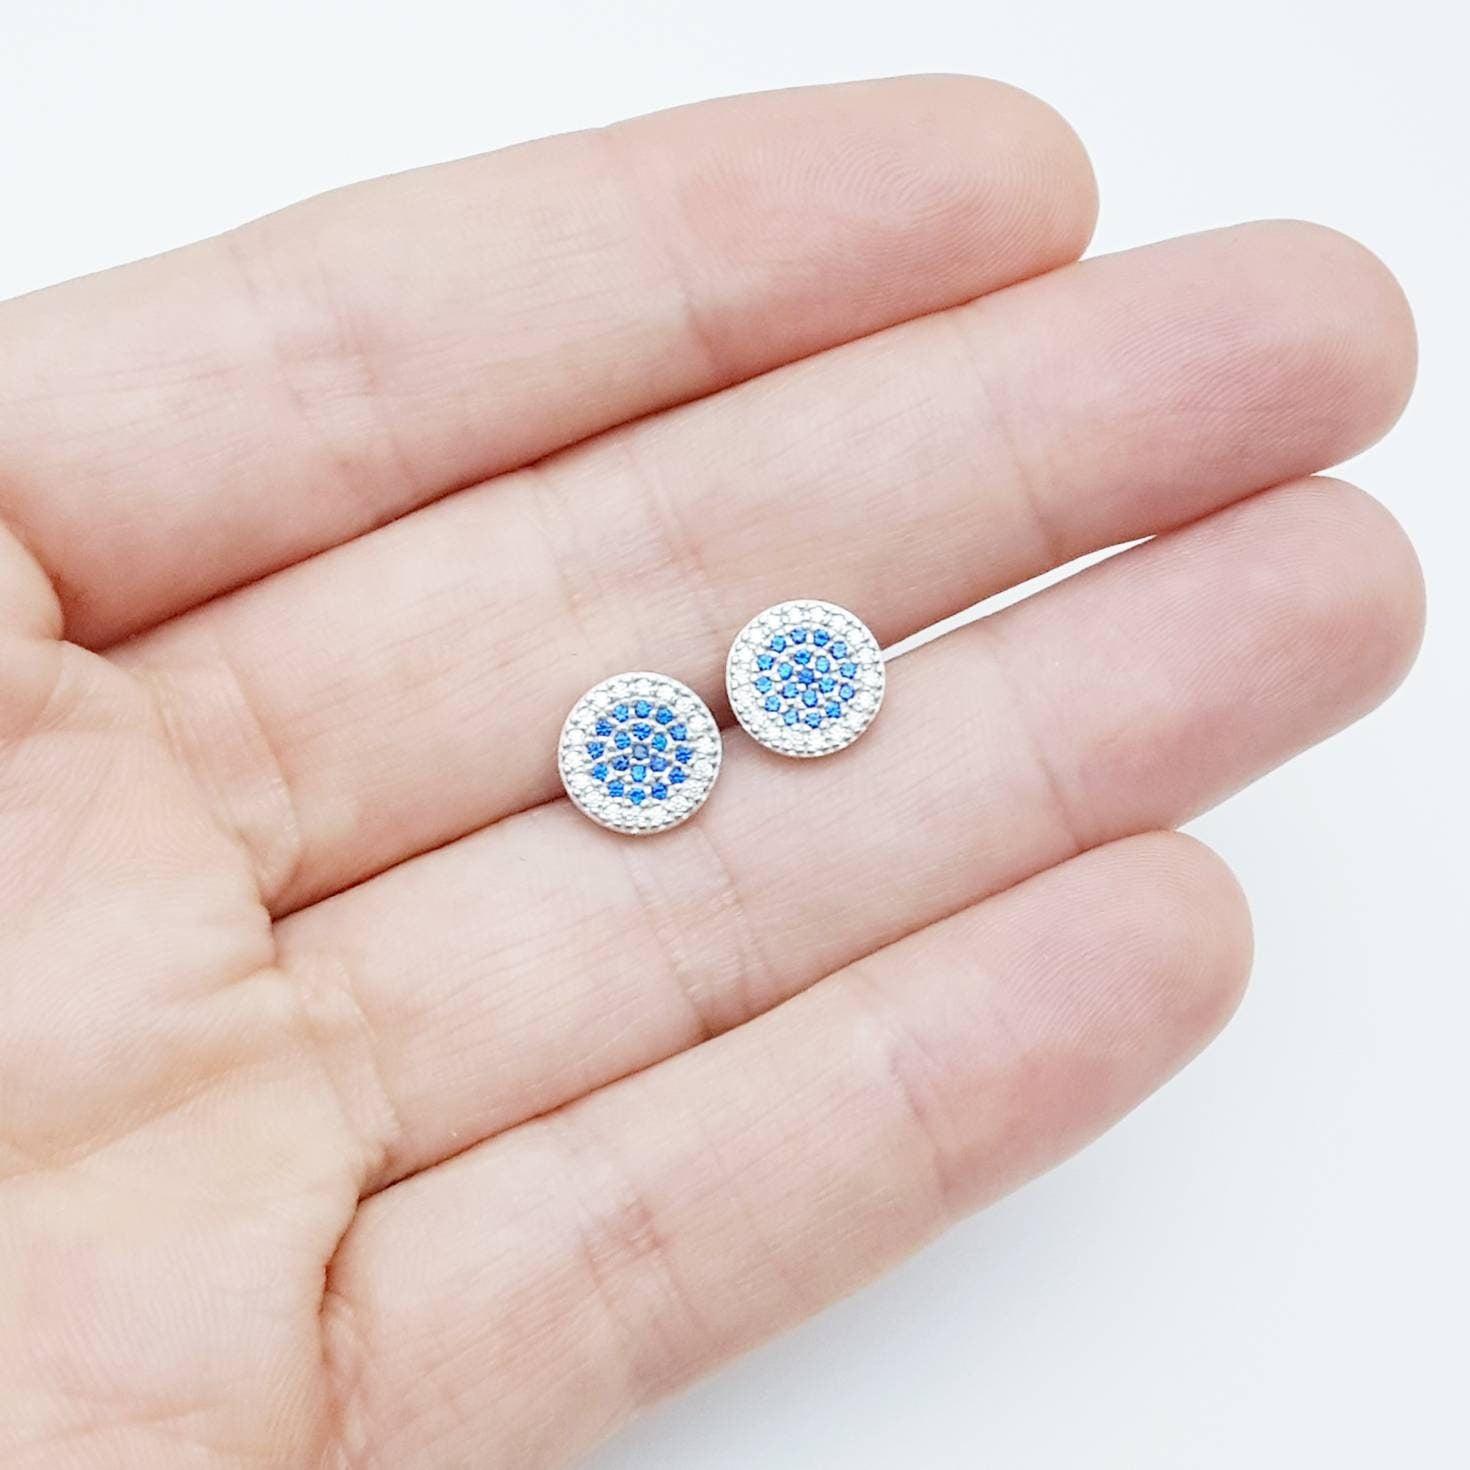 Flat round sterling silver blue stud earrings, pavé set blue earrings